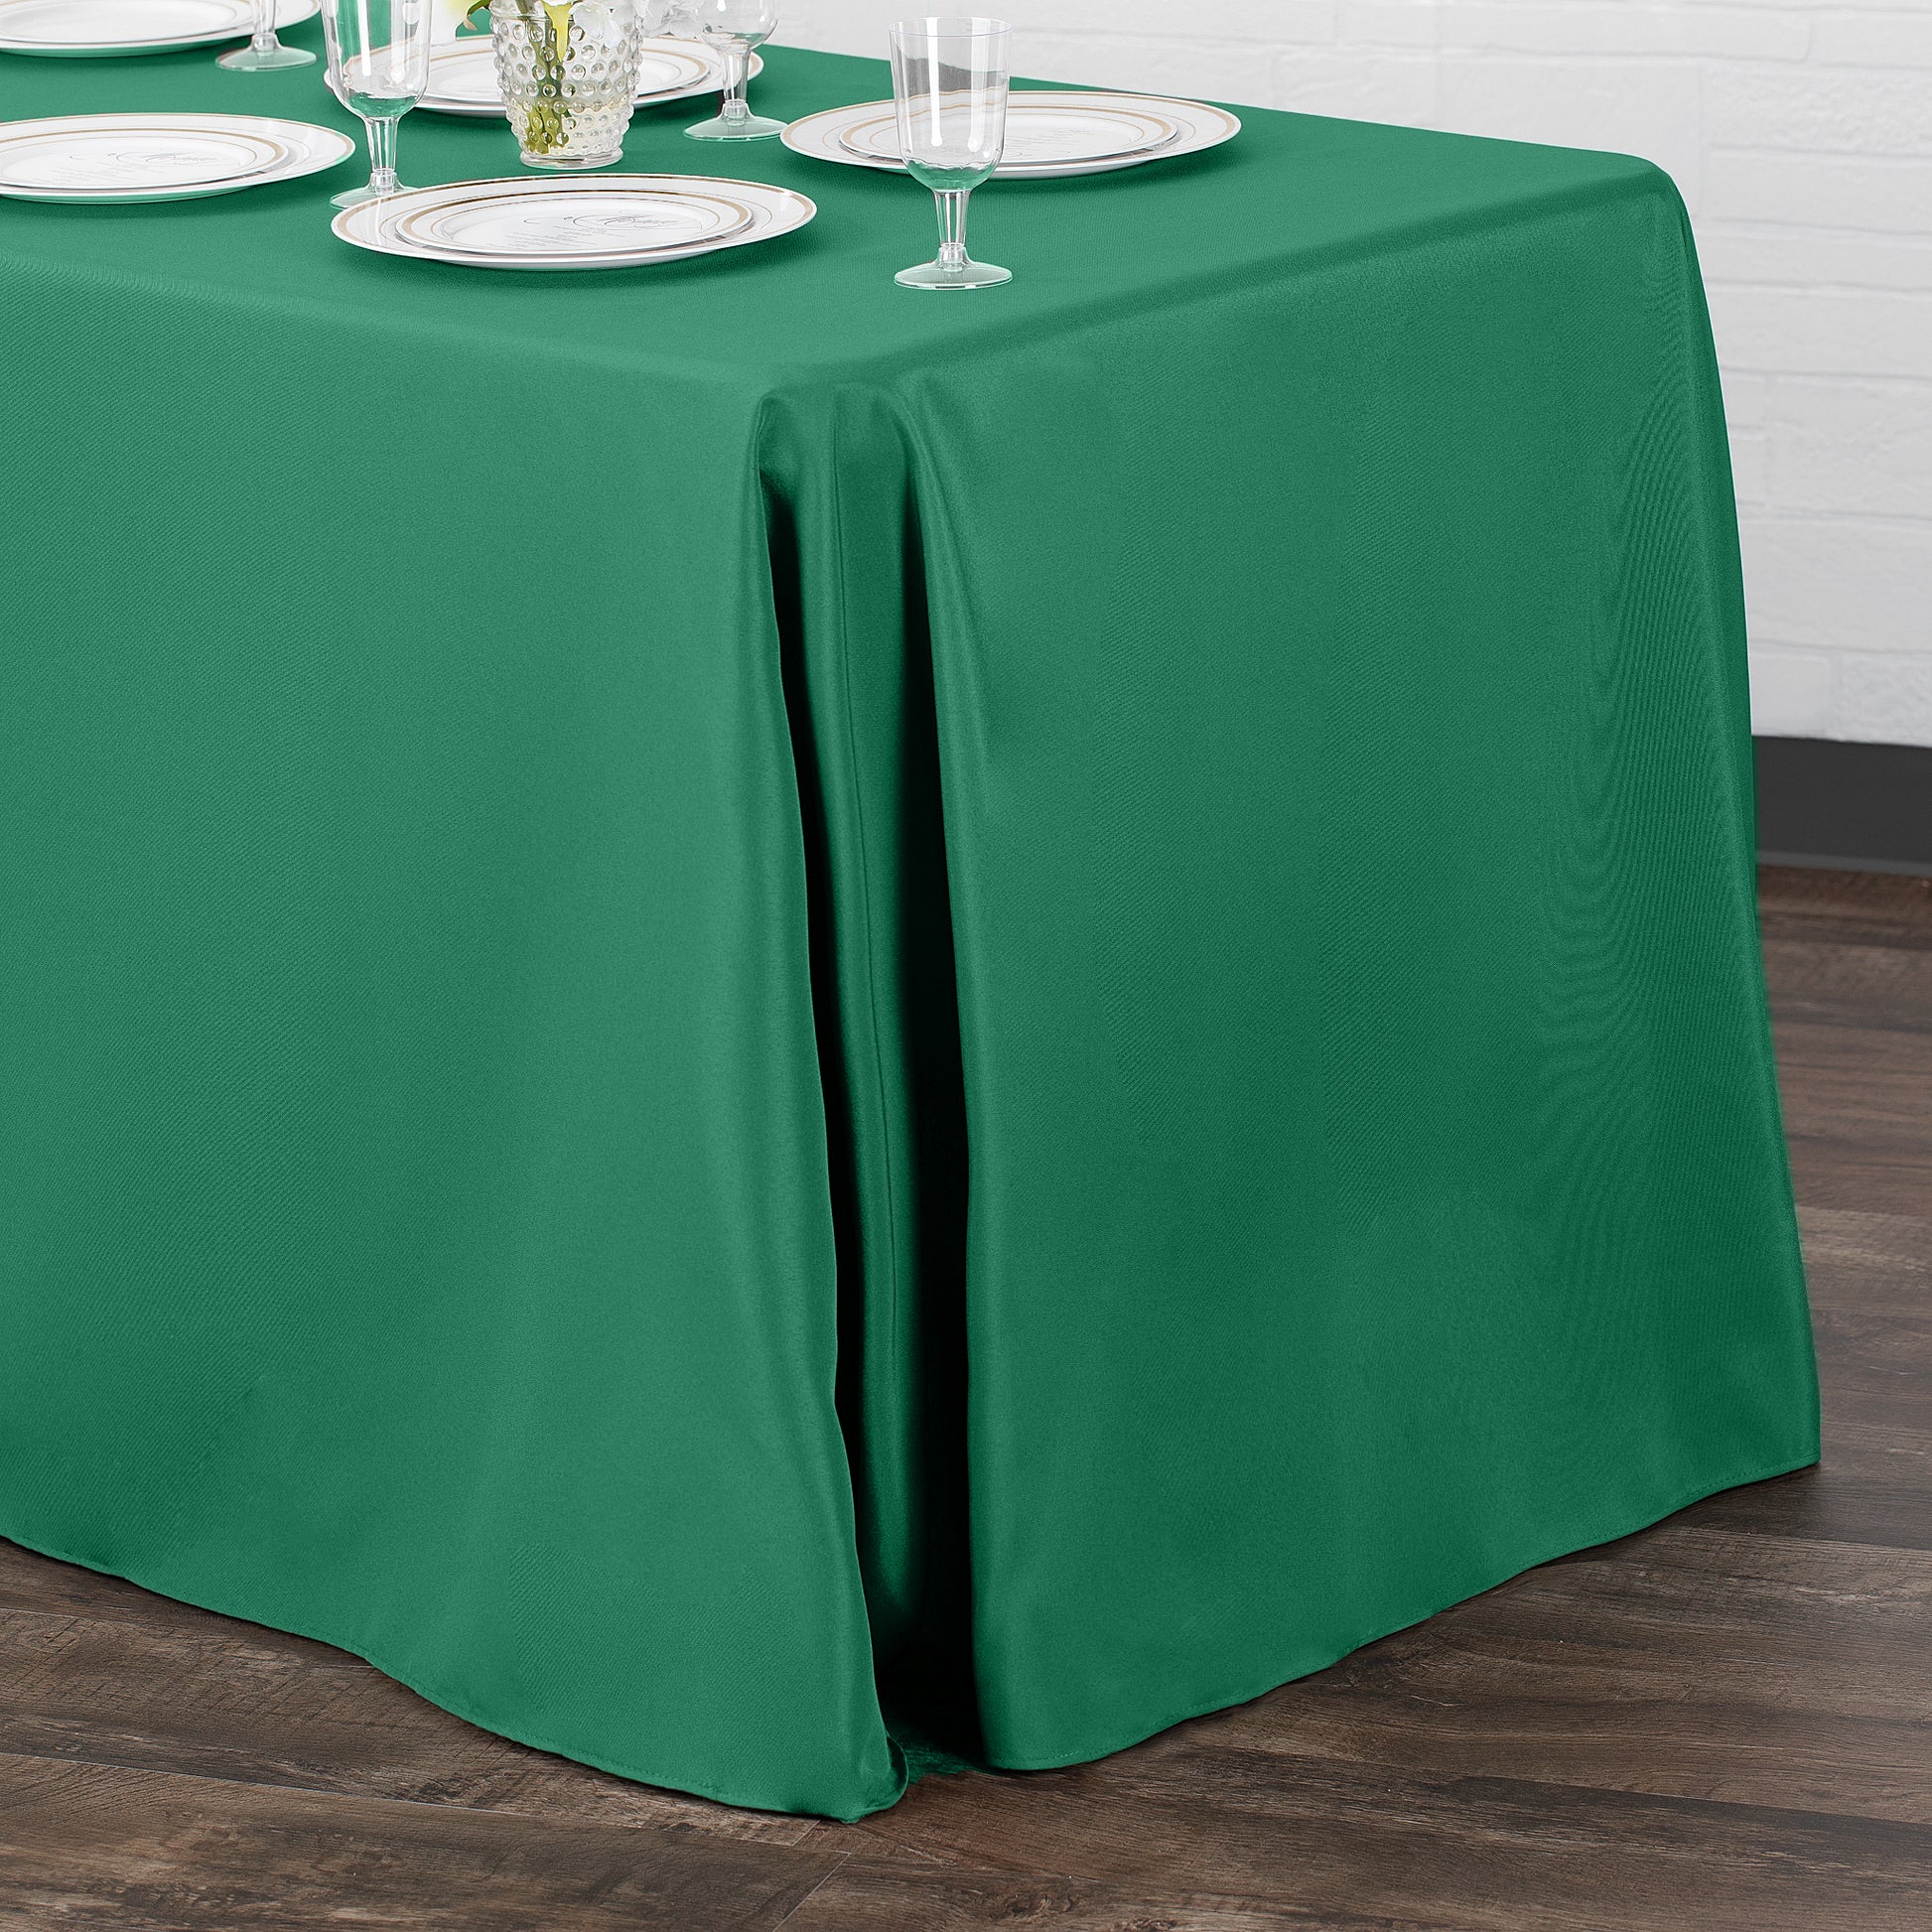 90"x132" Rectangular Oblong Polyester Tablecloth - Emerald Green - CV Linens